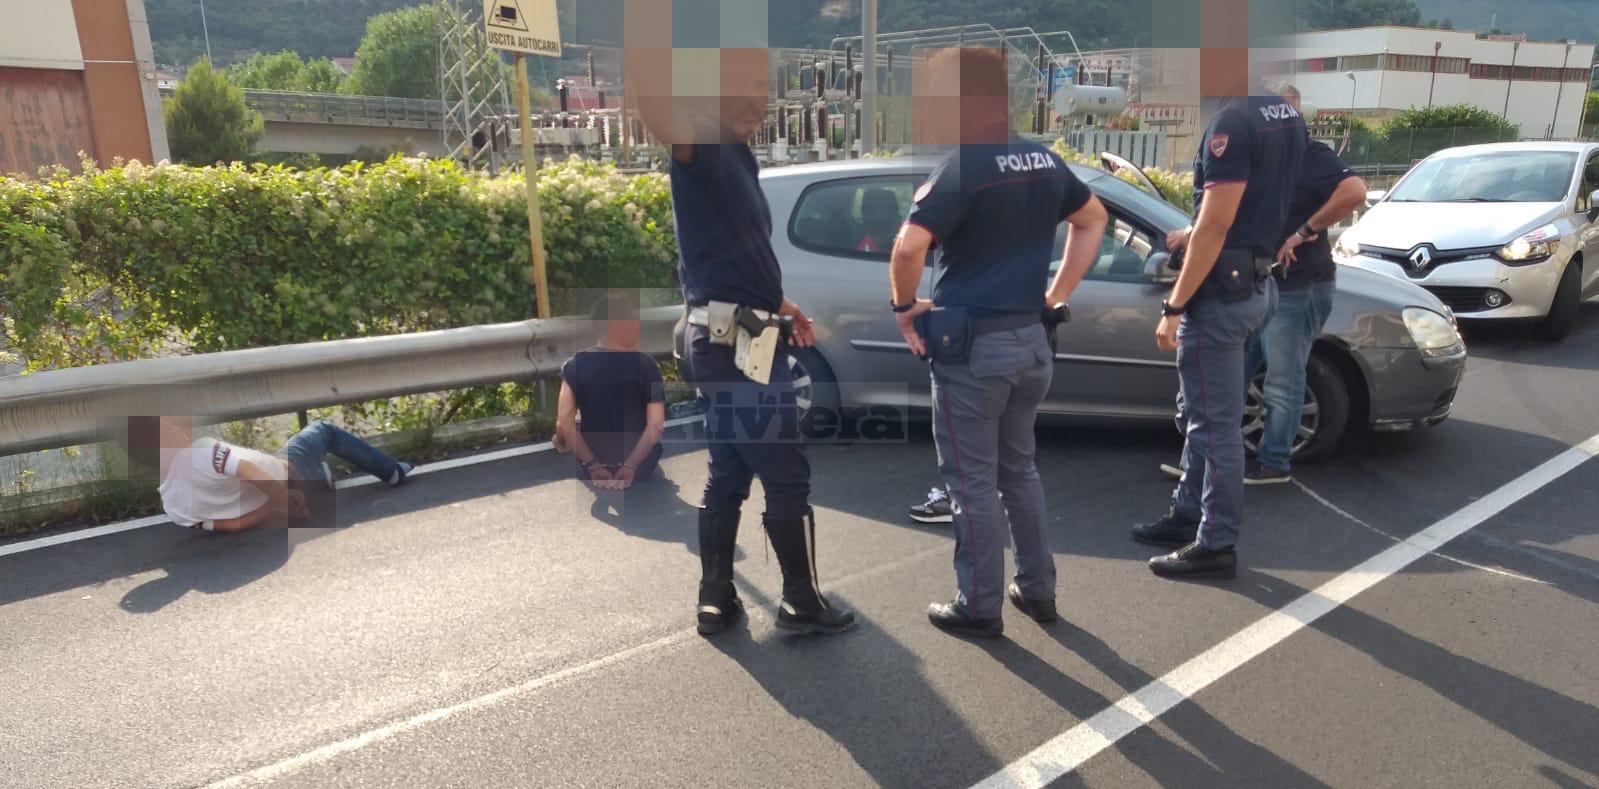 Arresto francesi magrebini contromano cavalcavia Ventimiglia1